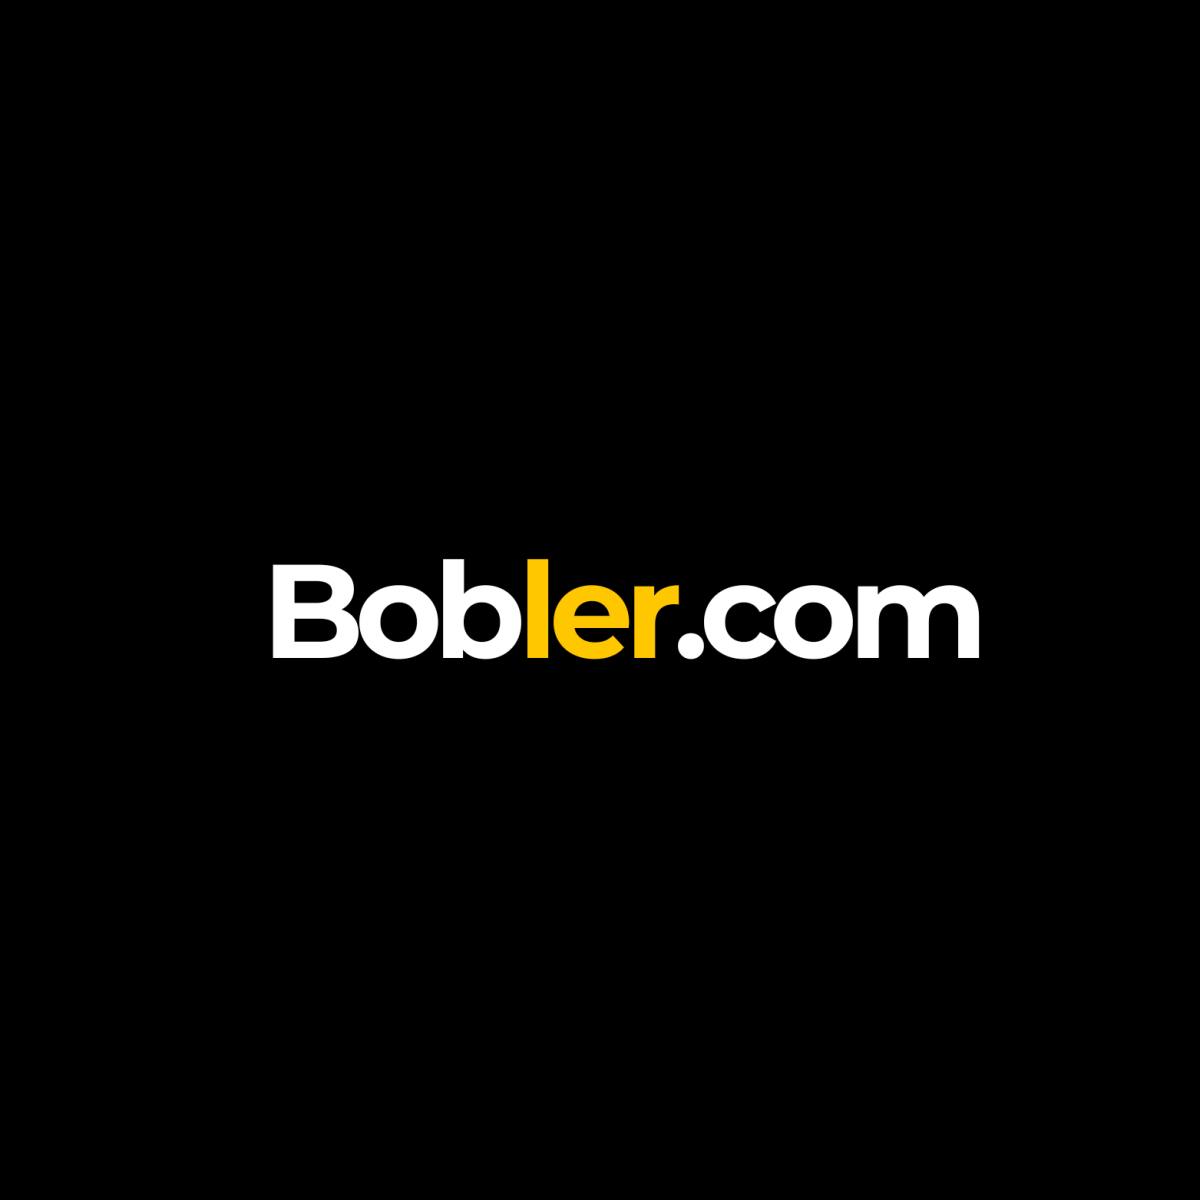 Bobler.com